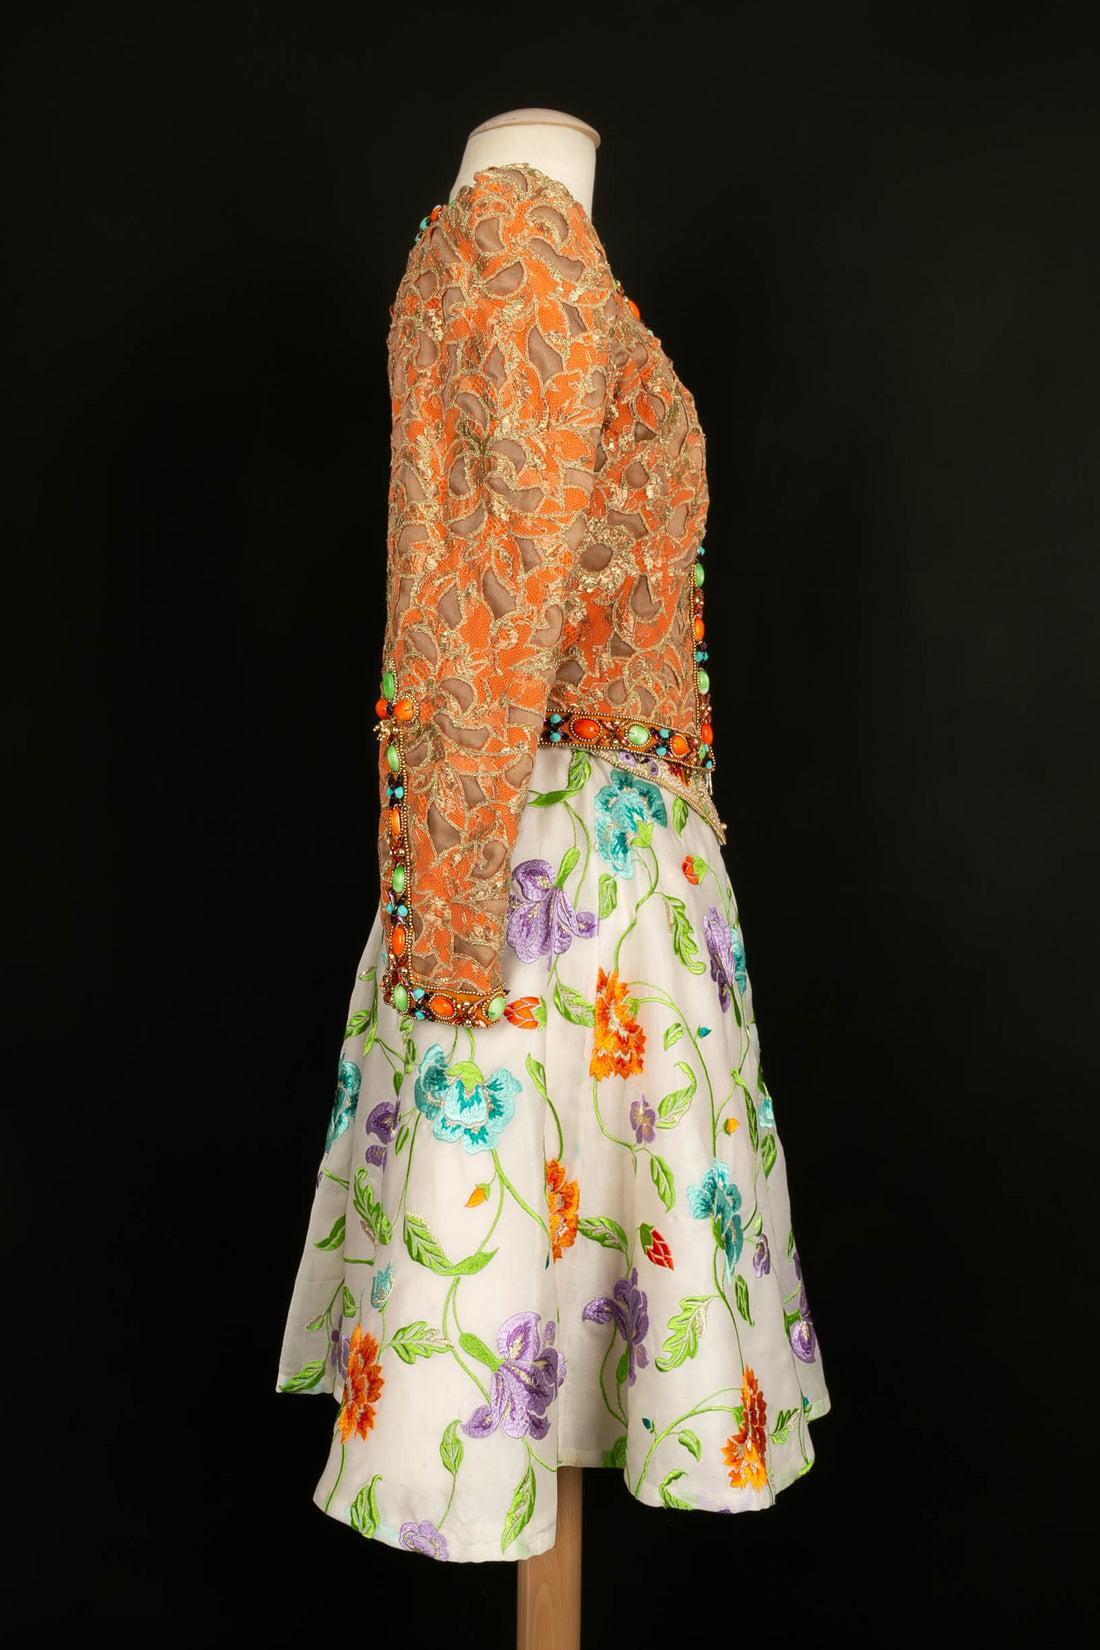 Ungaro -Ensemble Haute Couture composé d'une jupe, d'une veste et d'une ceinture entièrement brodées de fleurs, de perles et de strass. Pas de Label de composition ou de taille indiqué, il correspond à un 34FR.

Informations complémentaires :